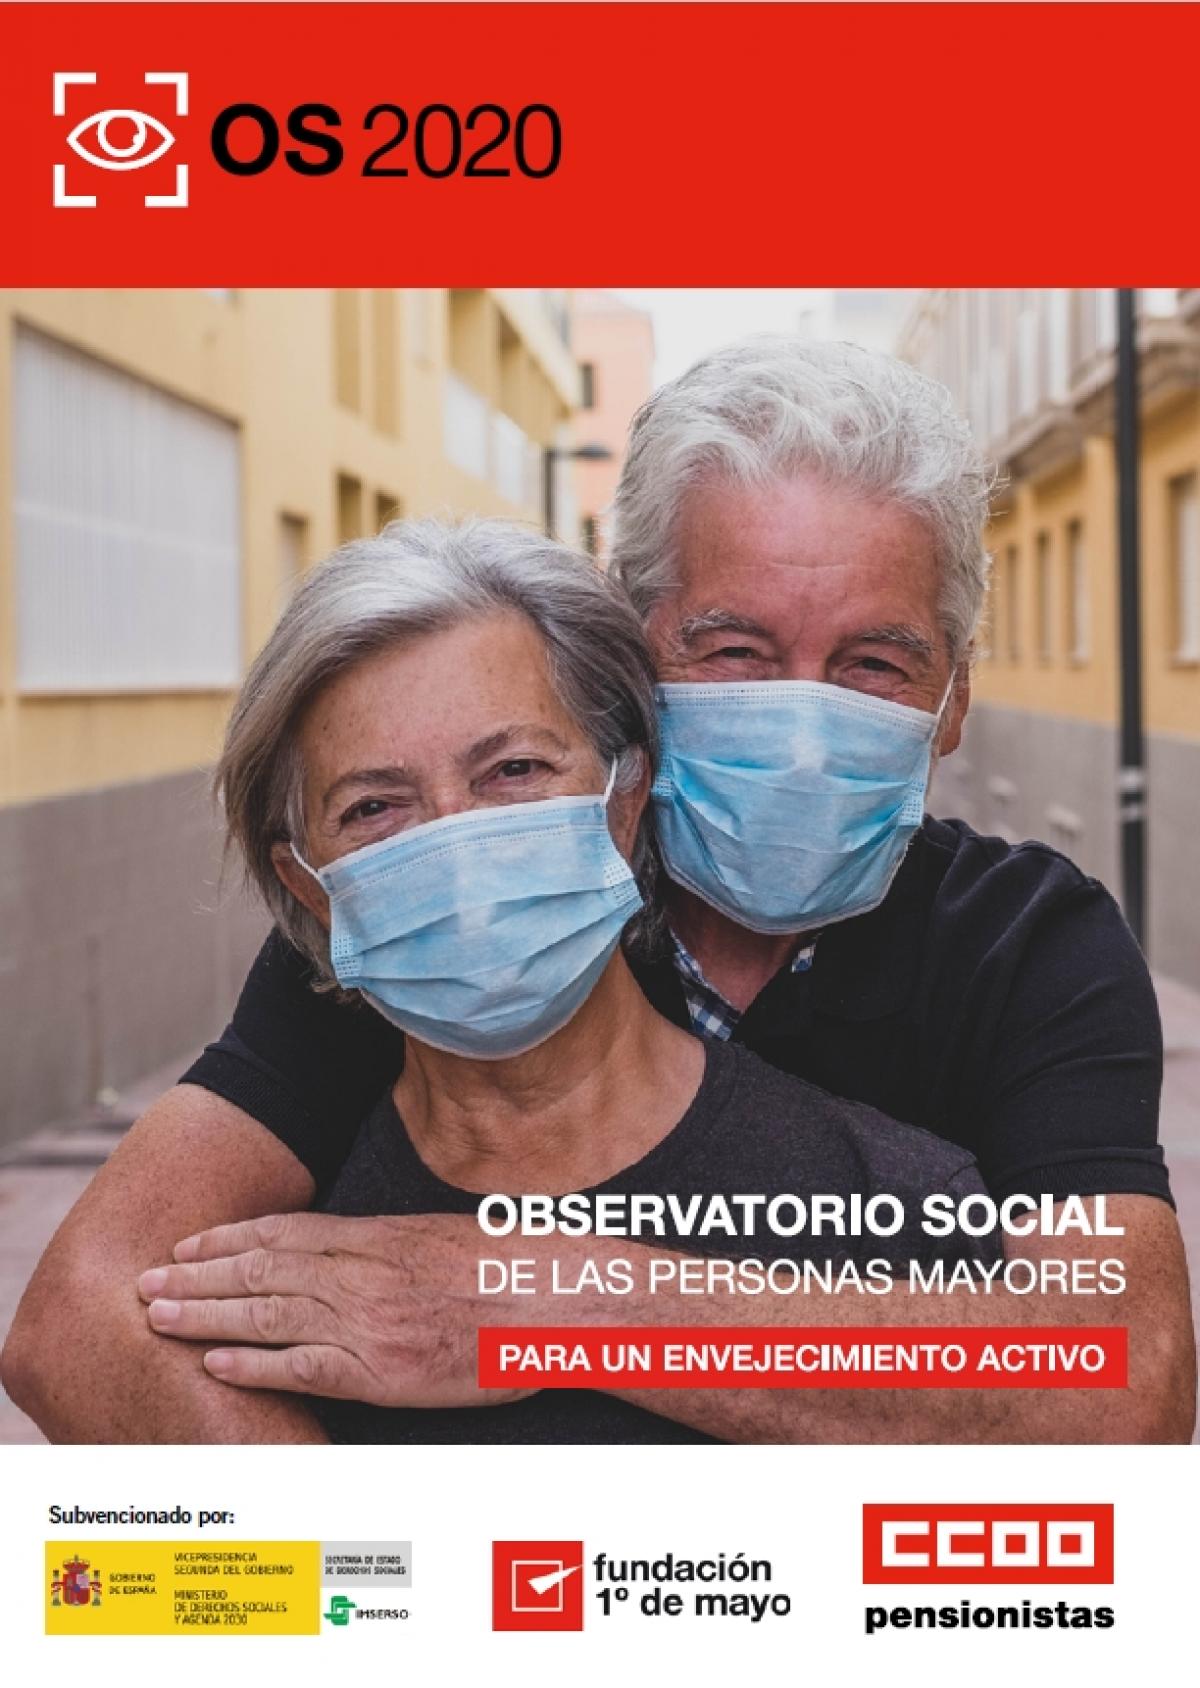 OBSERVATORIO SOCIAL DE LAS PERSONAS MAYORES 2020